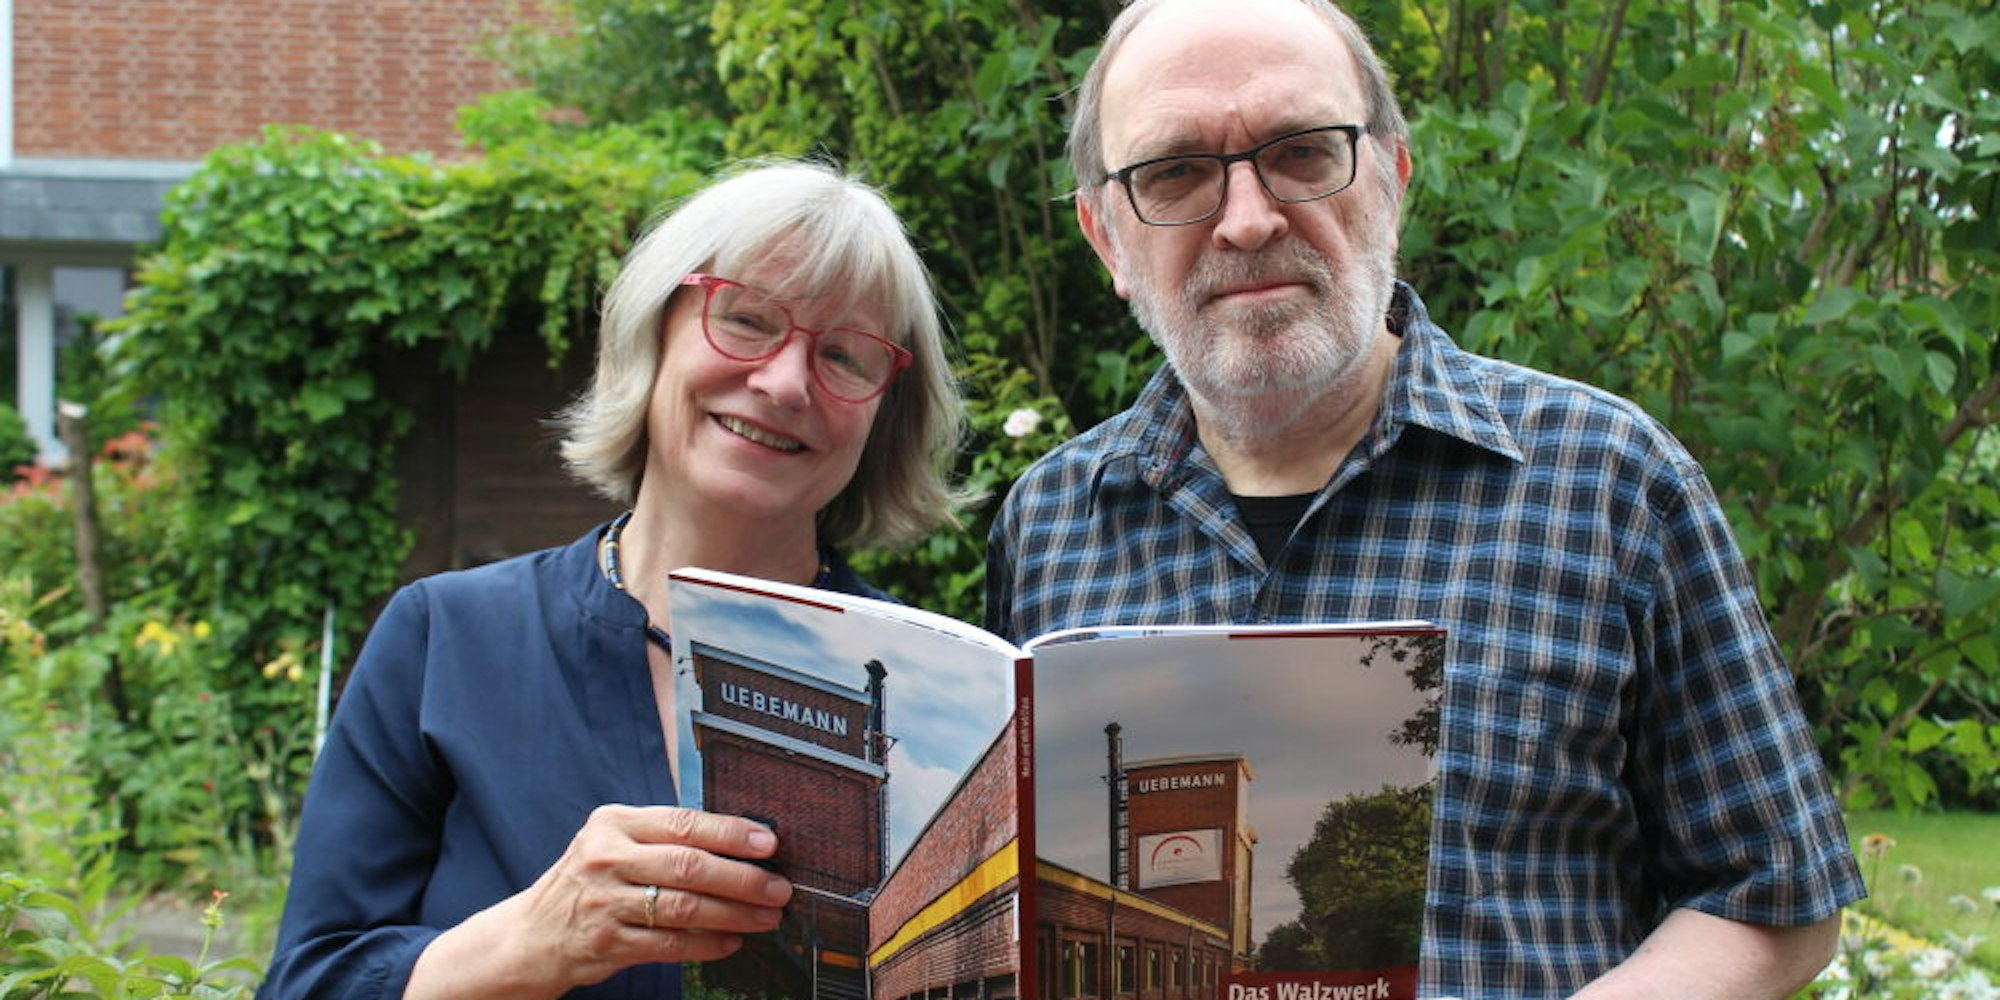 Drei Jahre haben Mecki und Wilfried Claus an ihrem Buch über das Walzwerk gearbeitet.